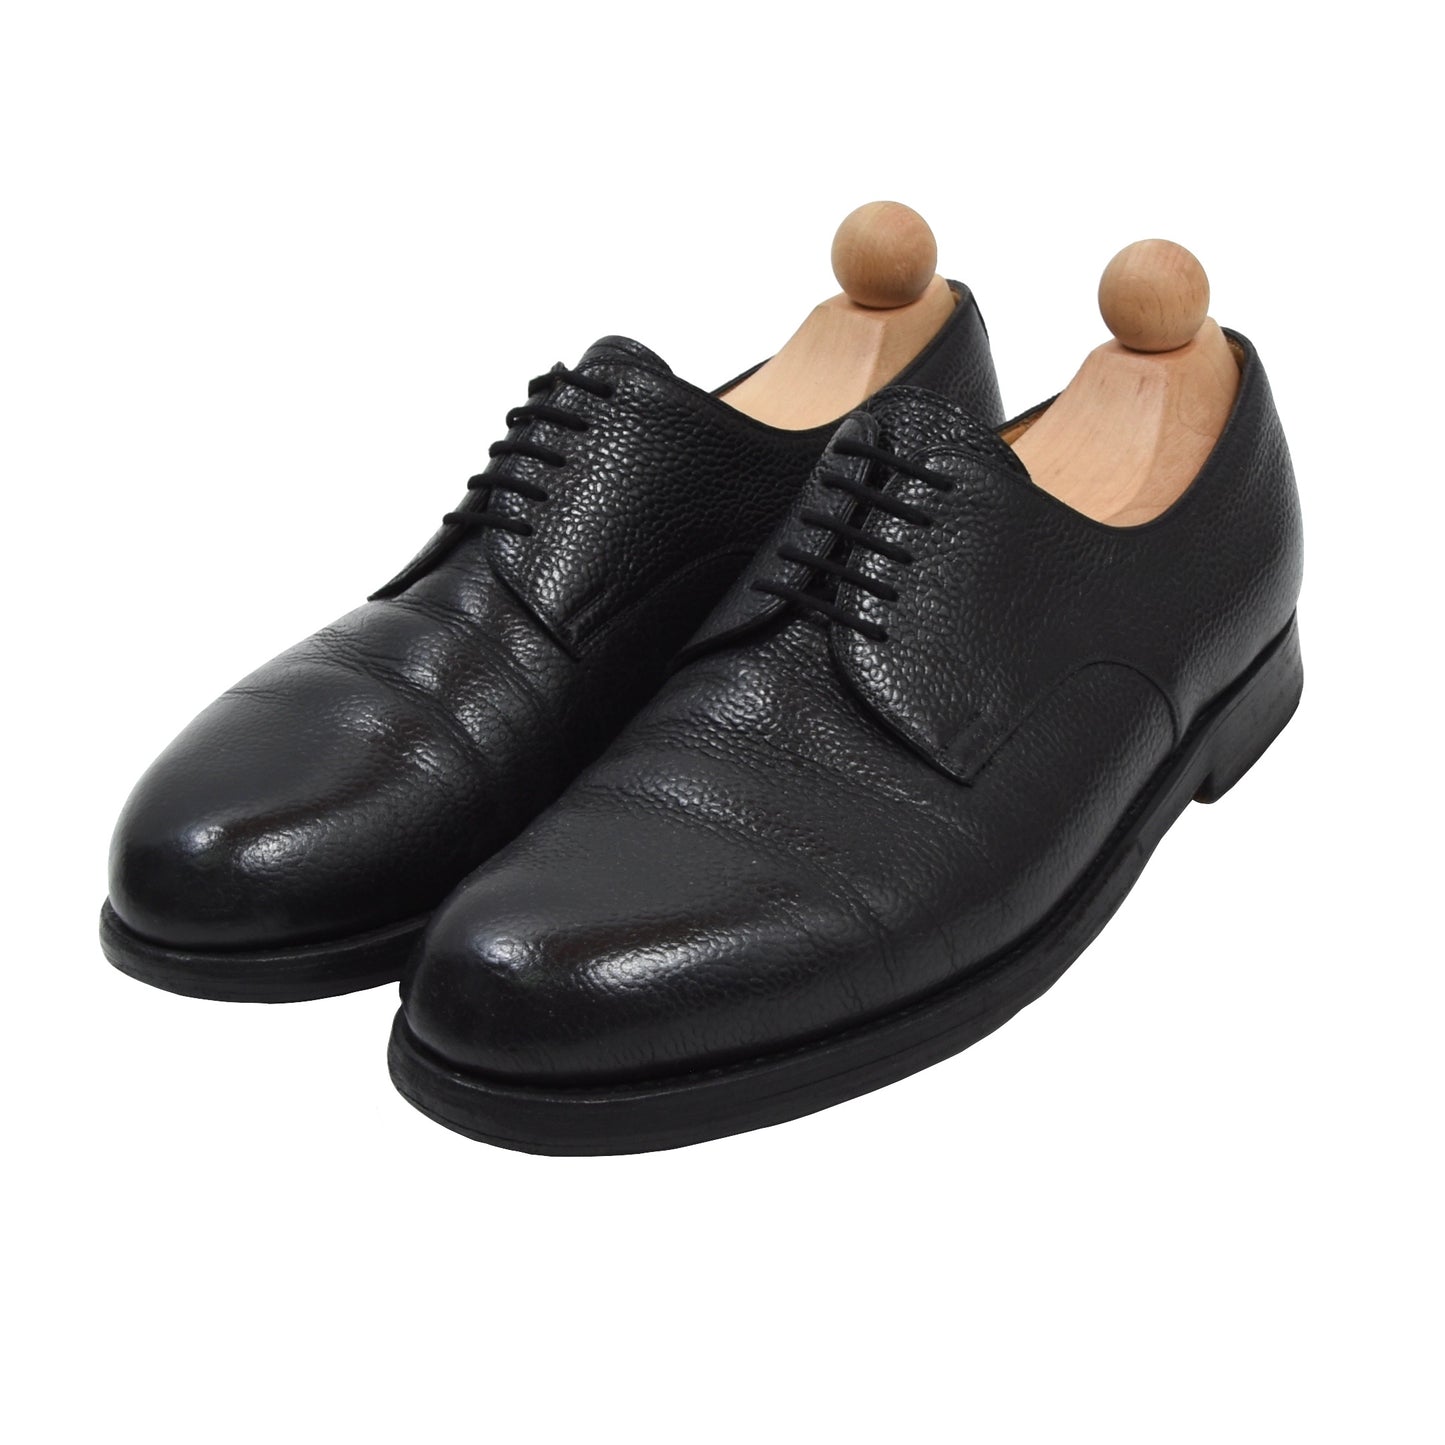 Lászlo Váss Shoes Size 42 - Black